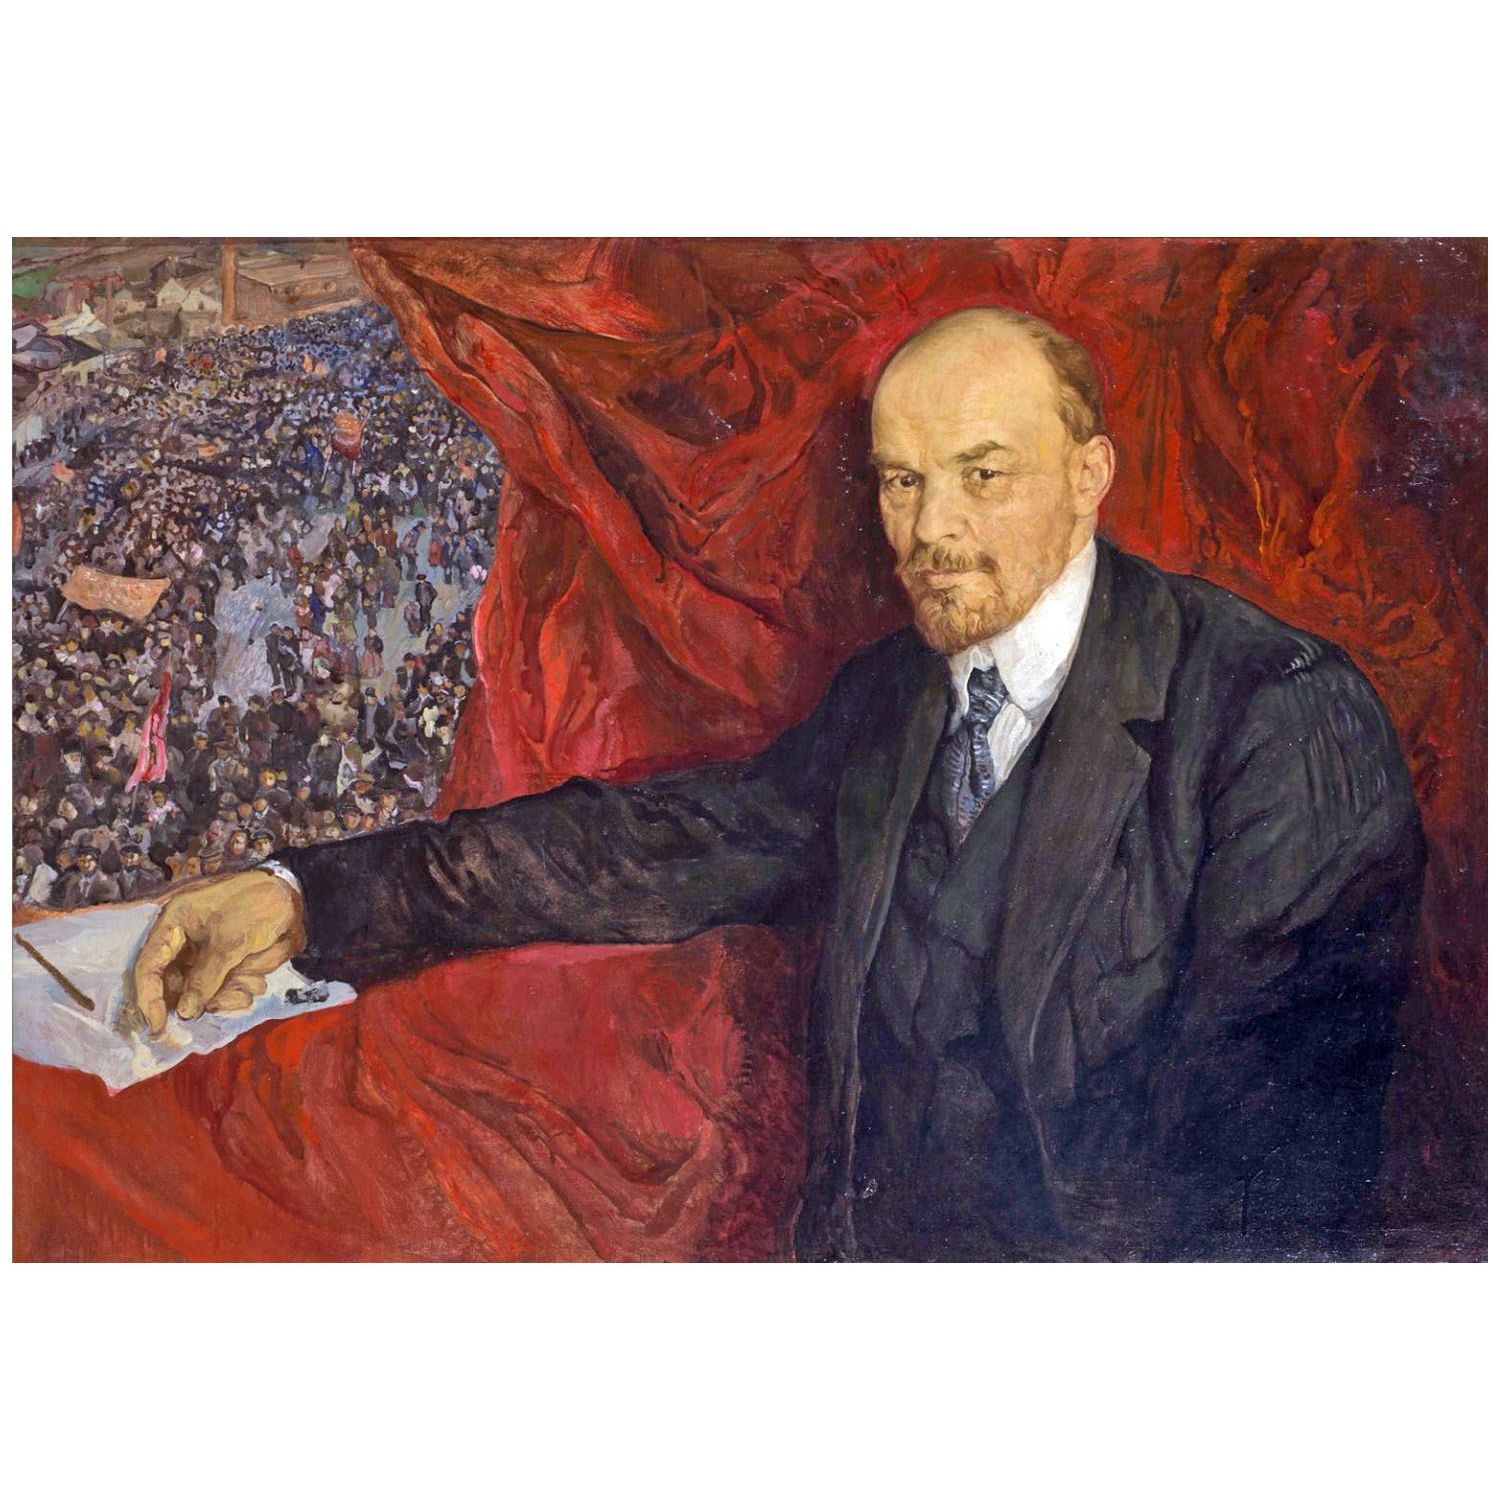 Исаак Бродский. Ленин и манифестация. 1919. ГИМ, Москва